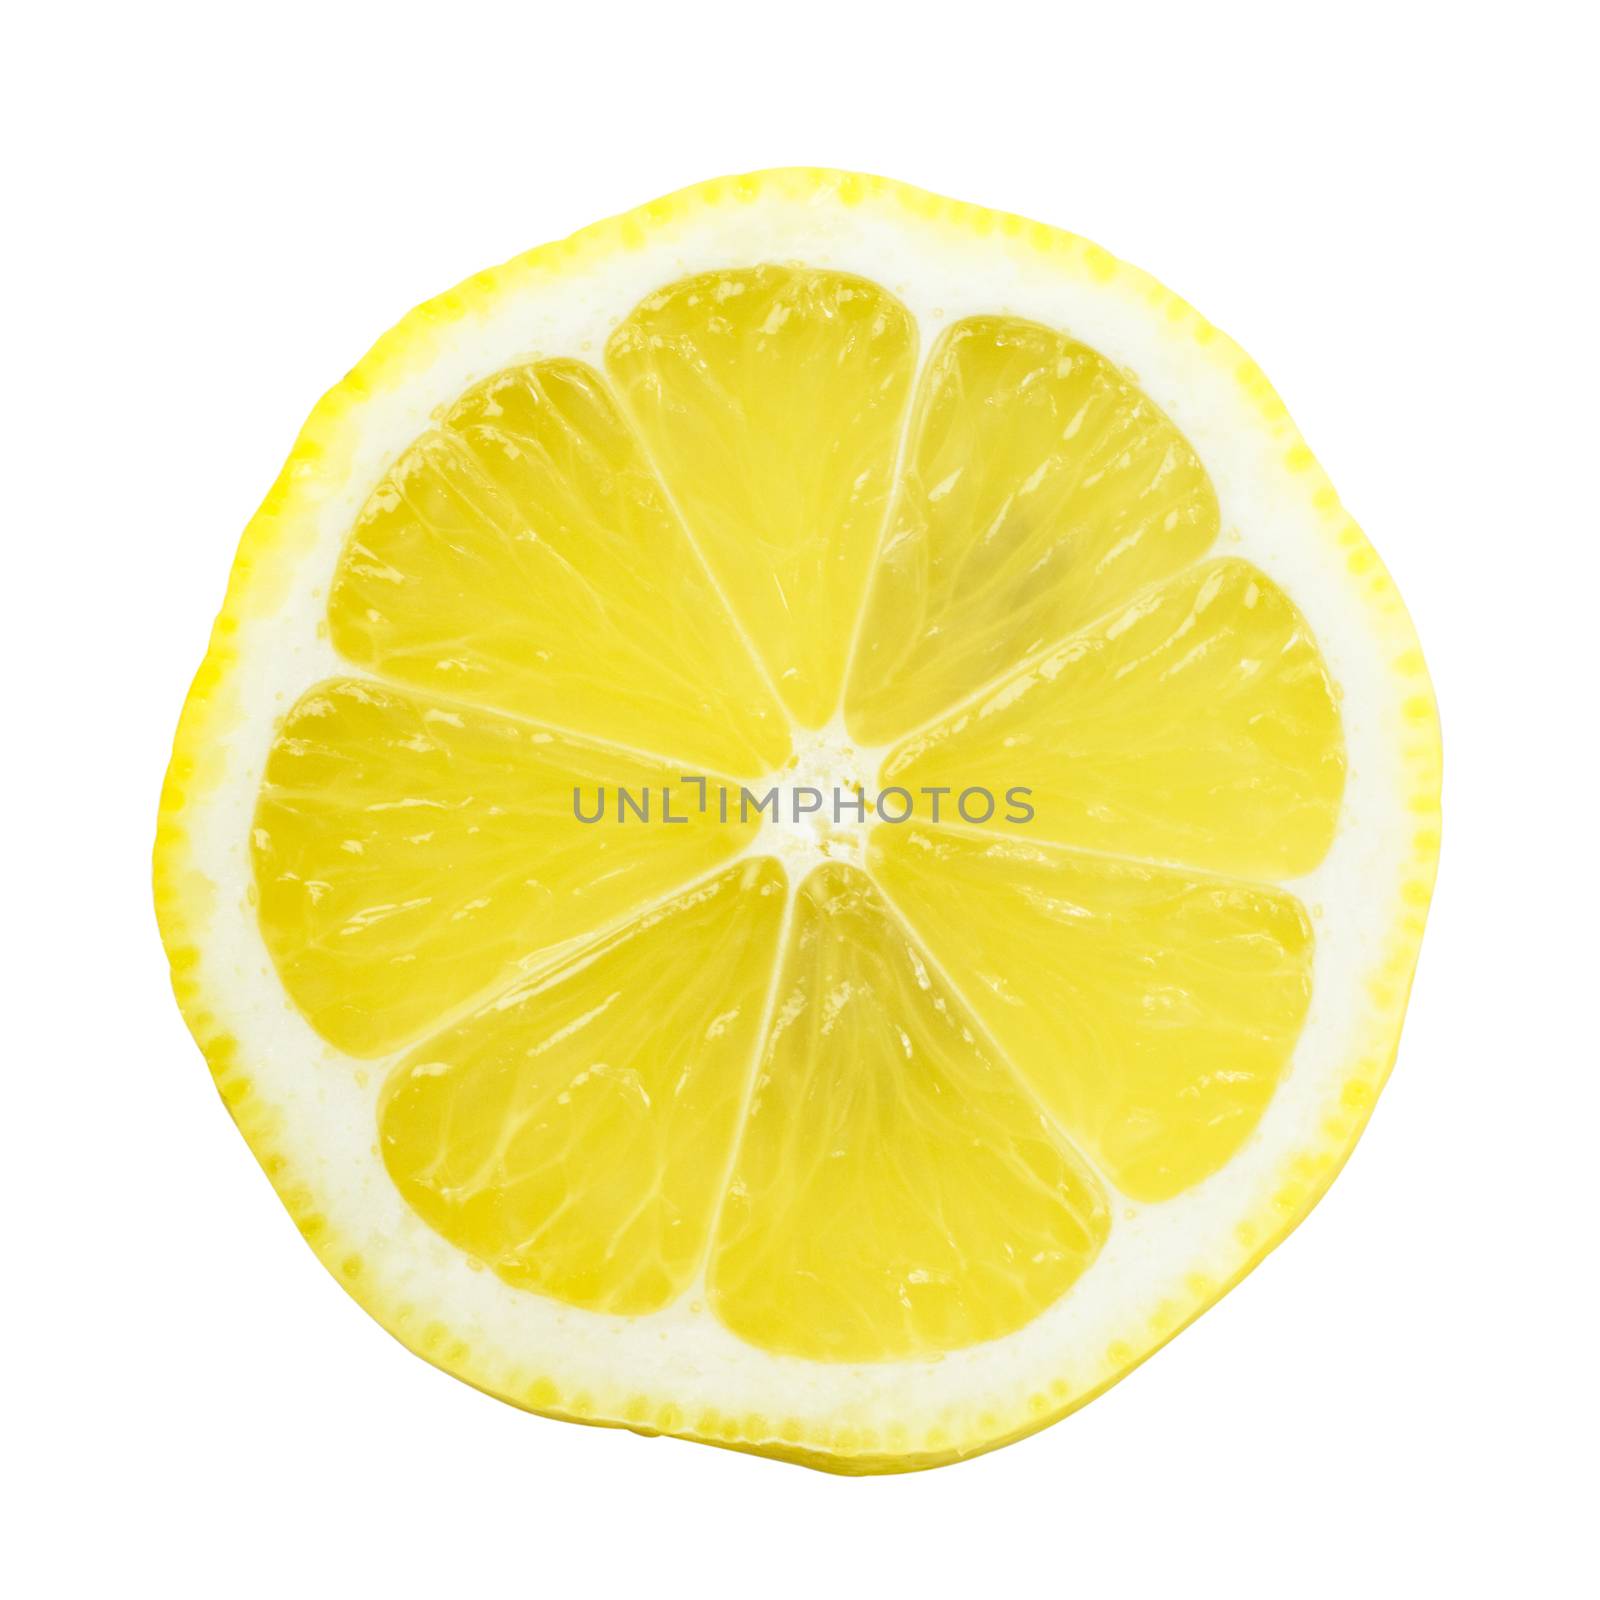 Slice of lemon isolated on white background.